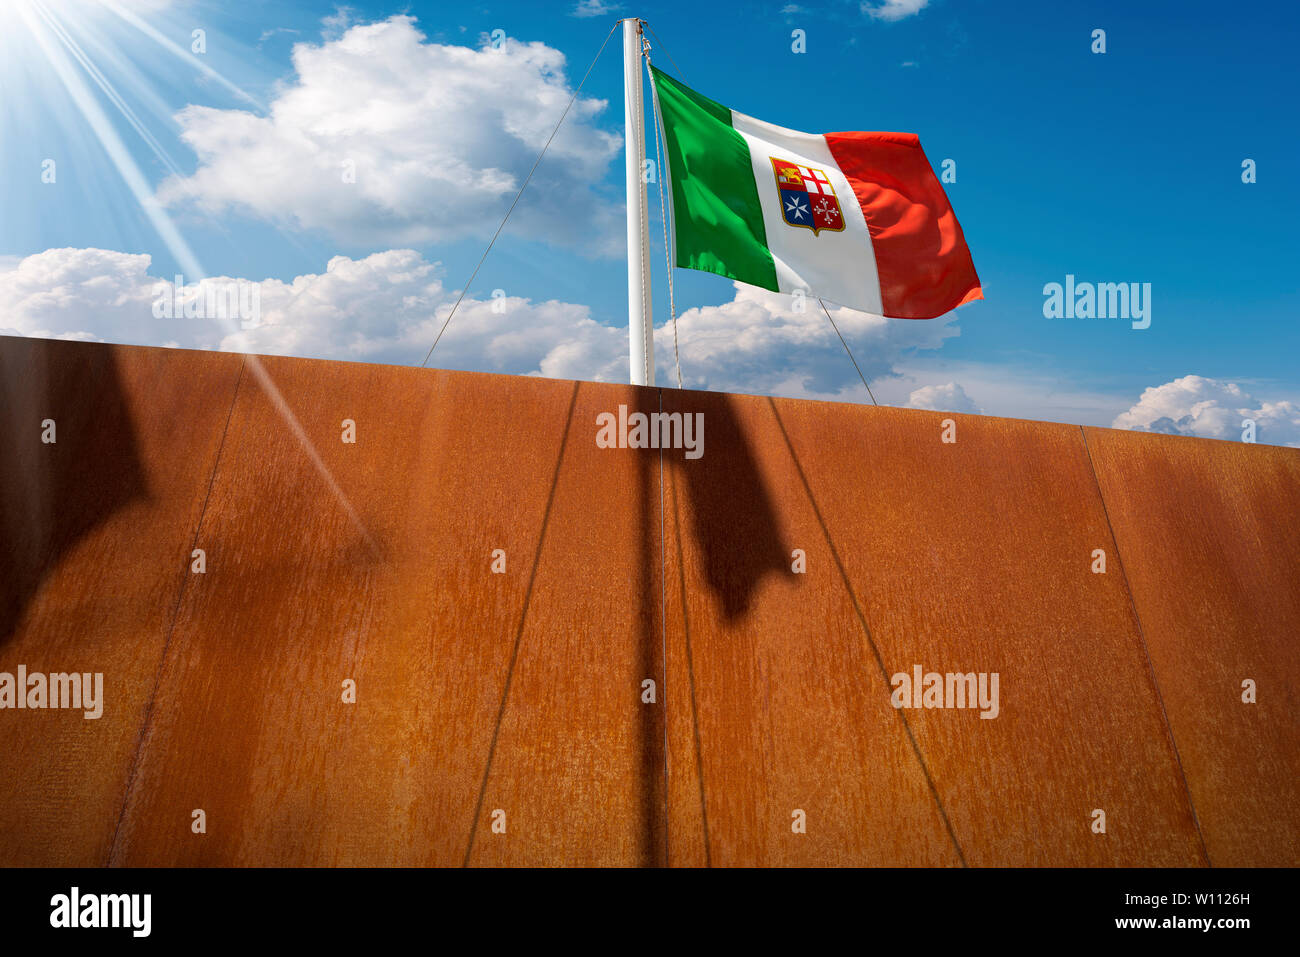 Bandiera Italiana con stemma delle quattro Repubbliche Marinare, Venezia, Genova, Pisa e Amalfi appeso su una nave sul montante di cielo blu con nuvole e raggi solari Foto Stock